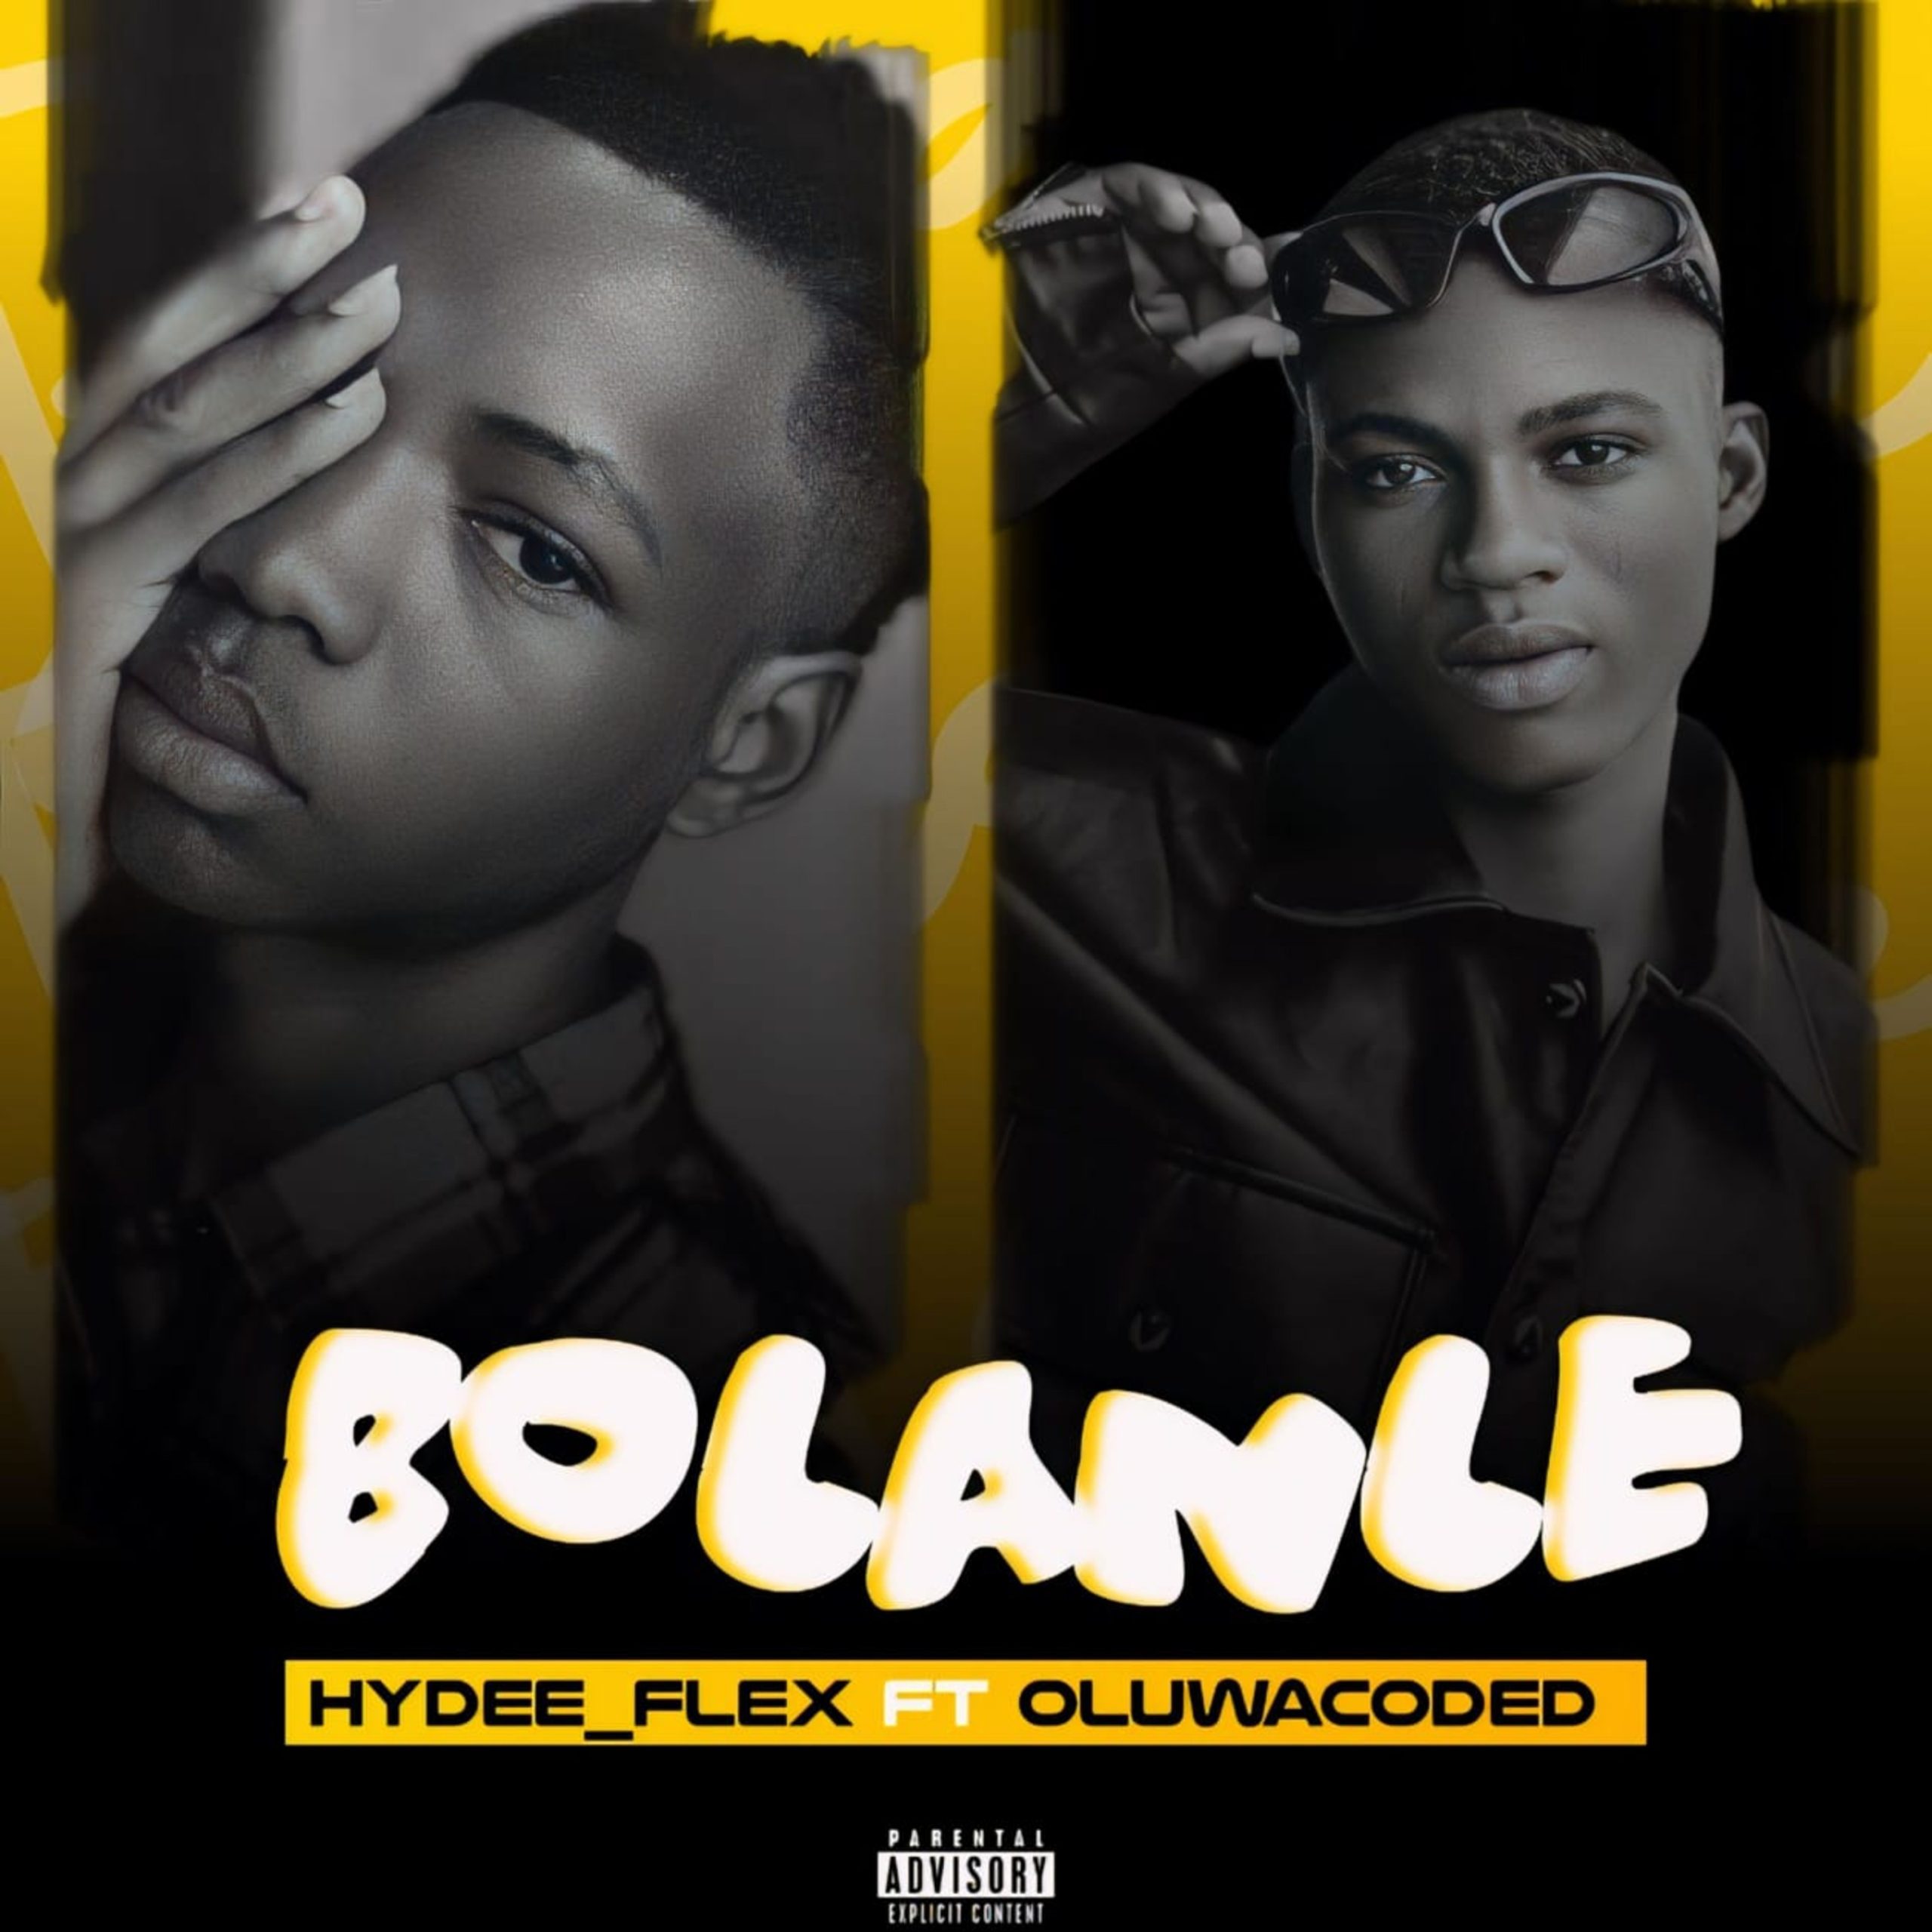 Hydee Flex Bolanle ft. Oluwacoded scaled